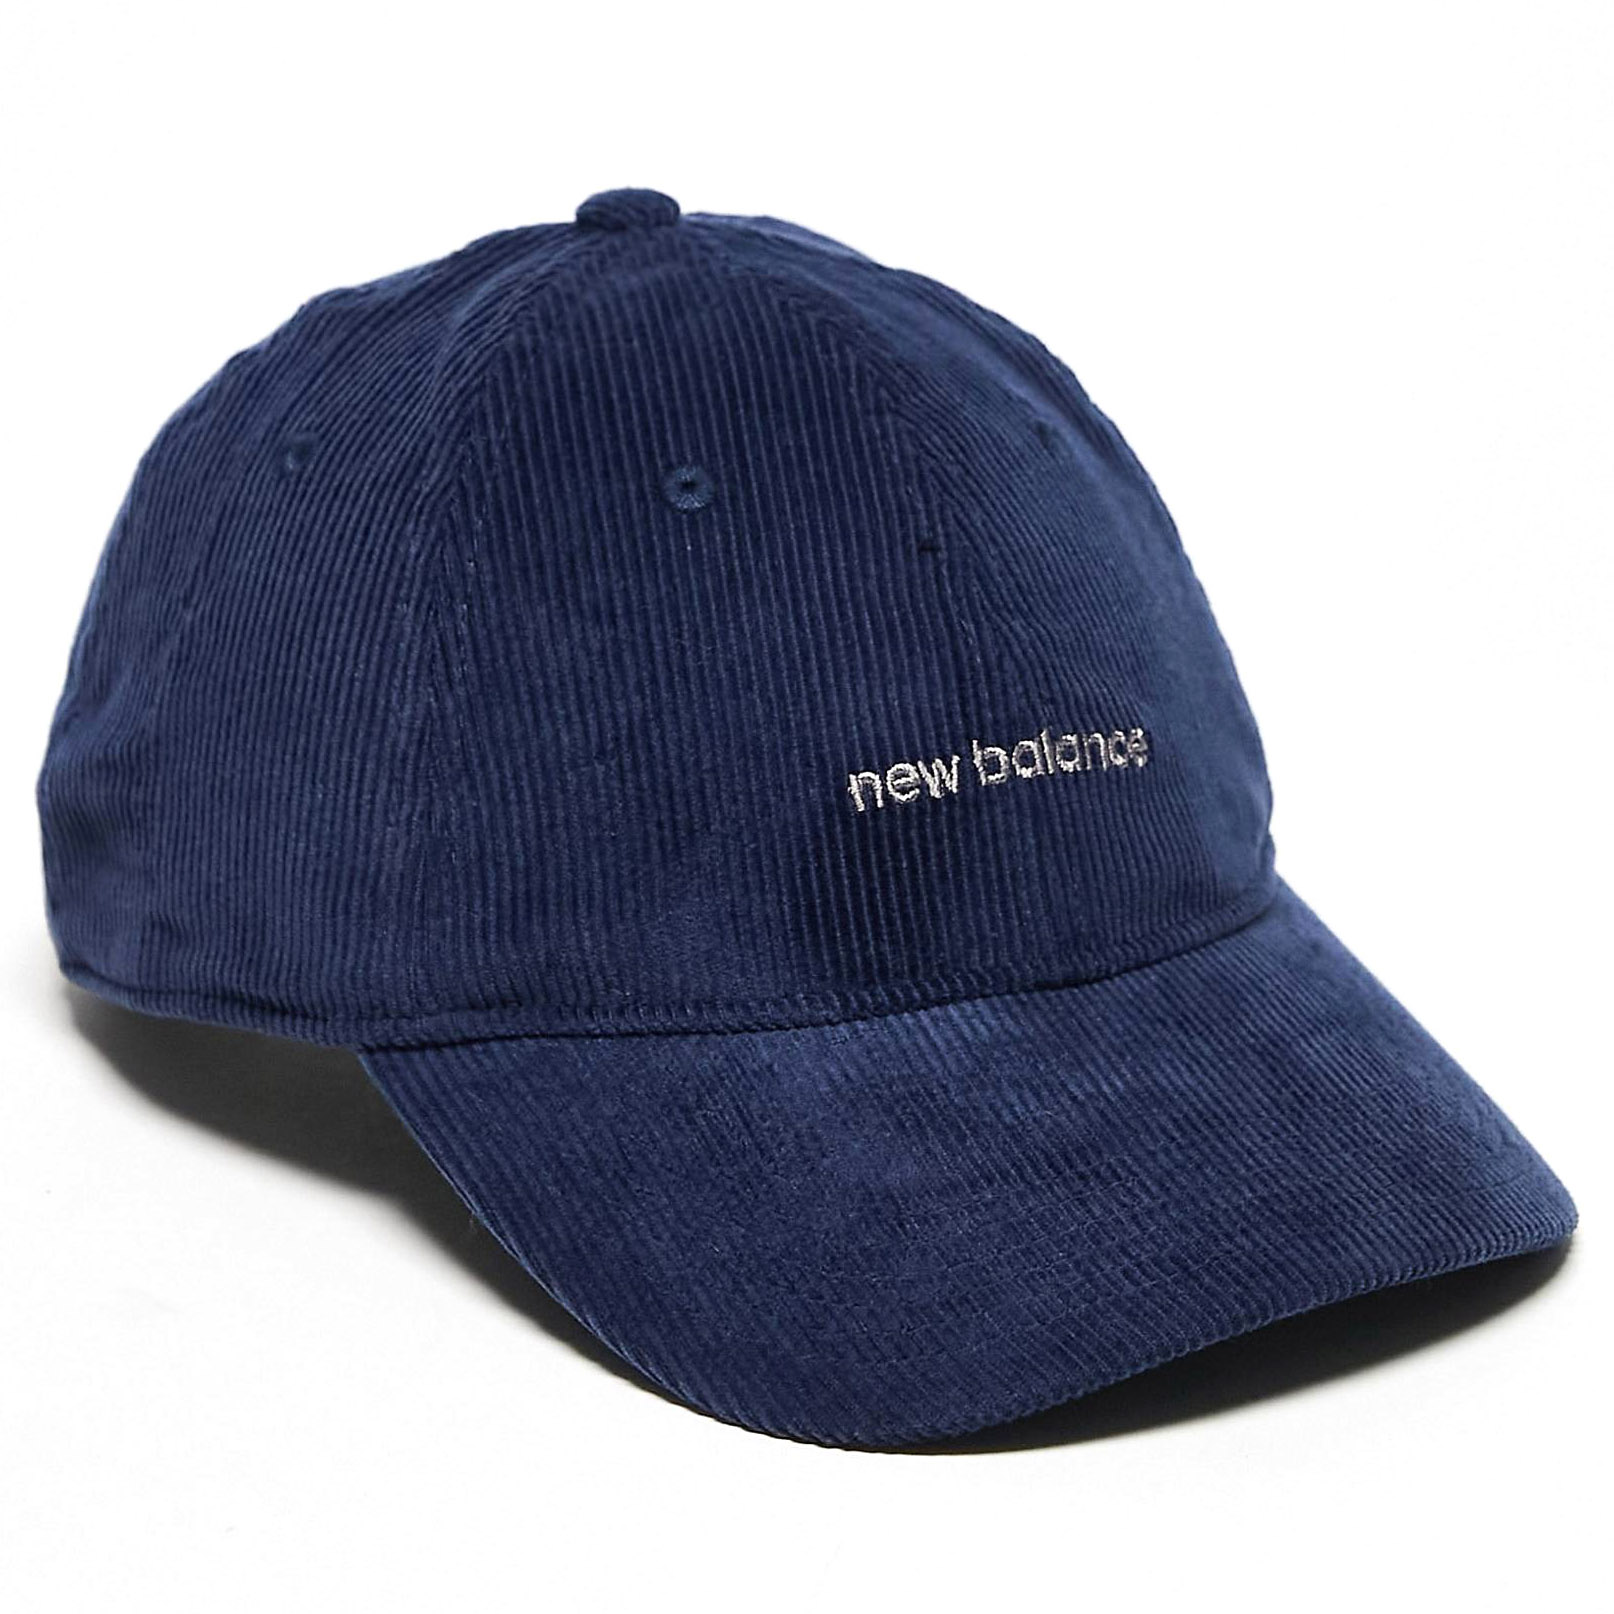 вельветовая шапка new balance для папы цвет workwear Кепка New Balance Linear Logo Cord, темно-синий